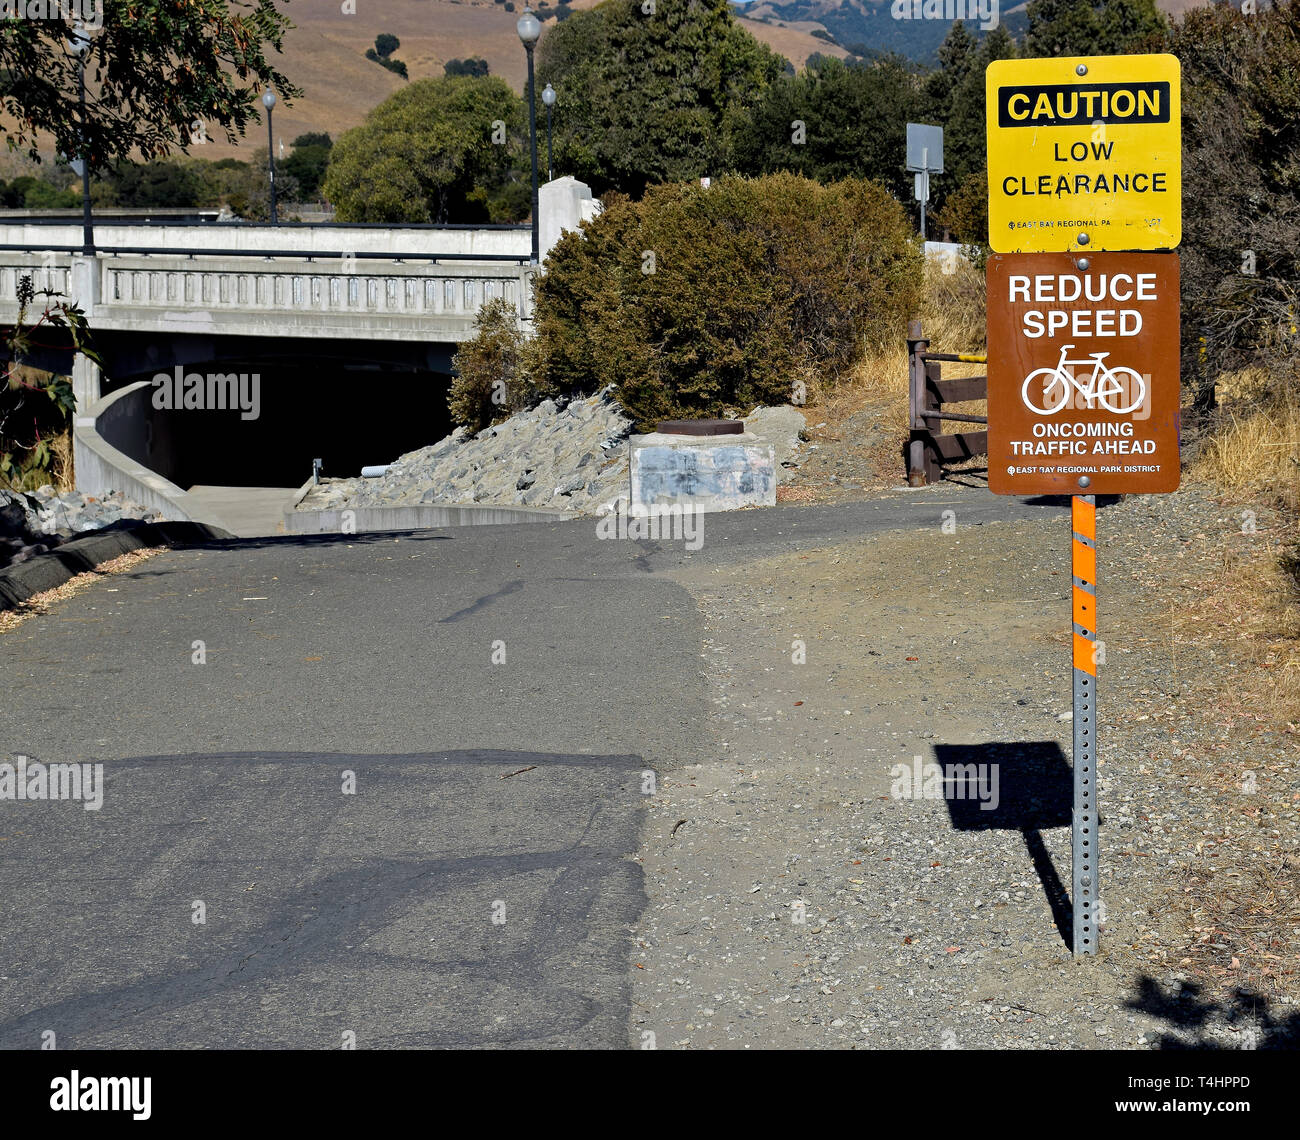 Alameda Creek Trail indicazioni per biciclette per ridurre la velocità e attenzione bassa clearance, California Foto Stock